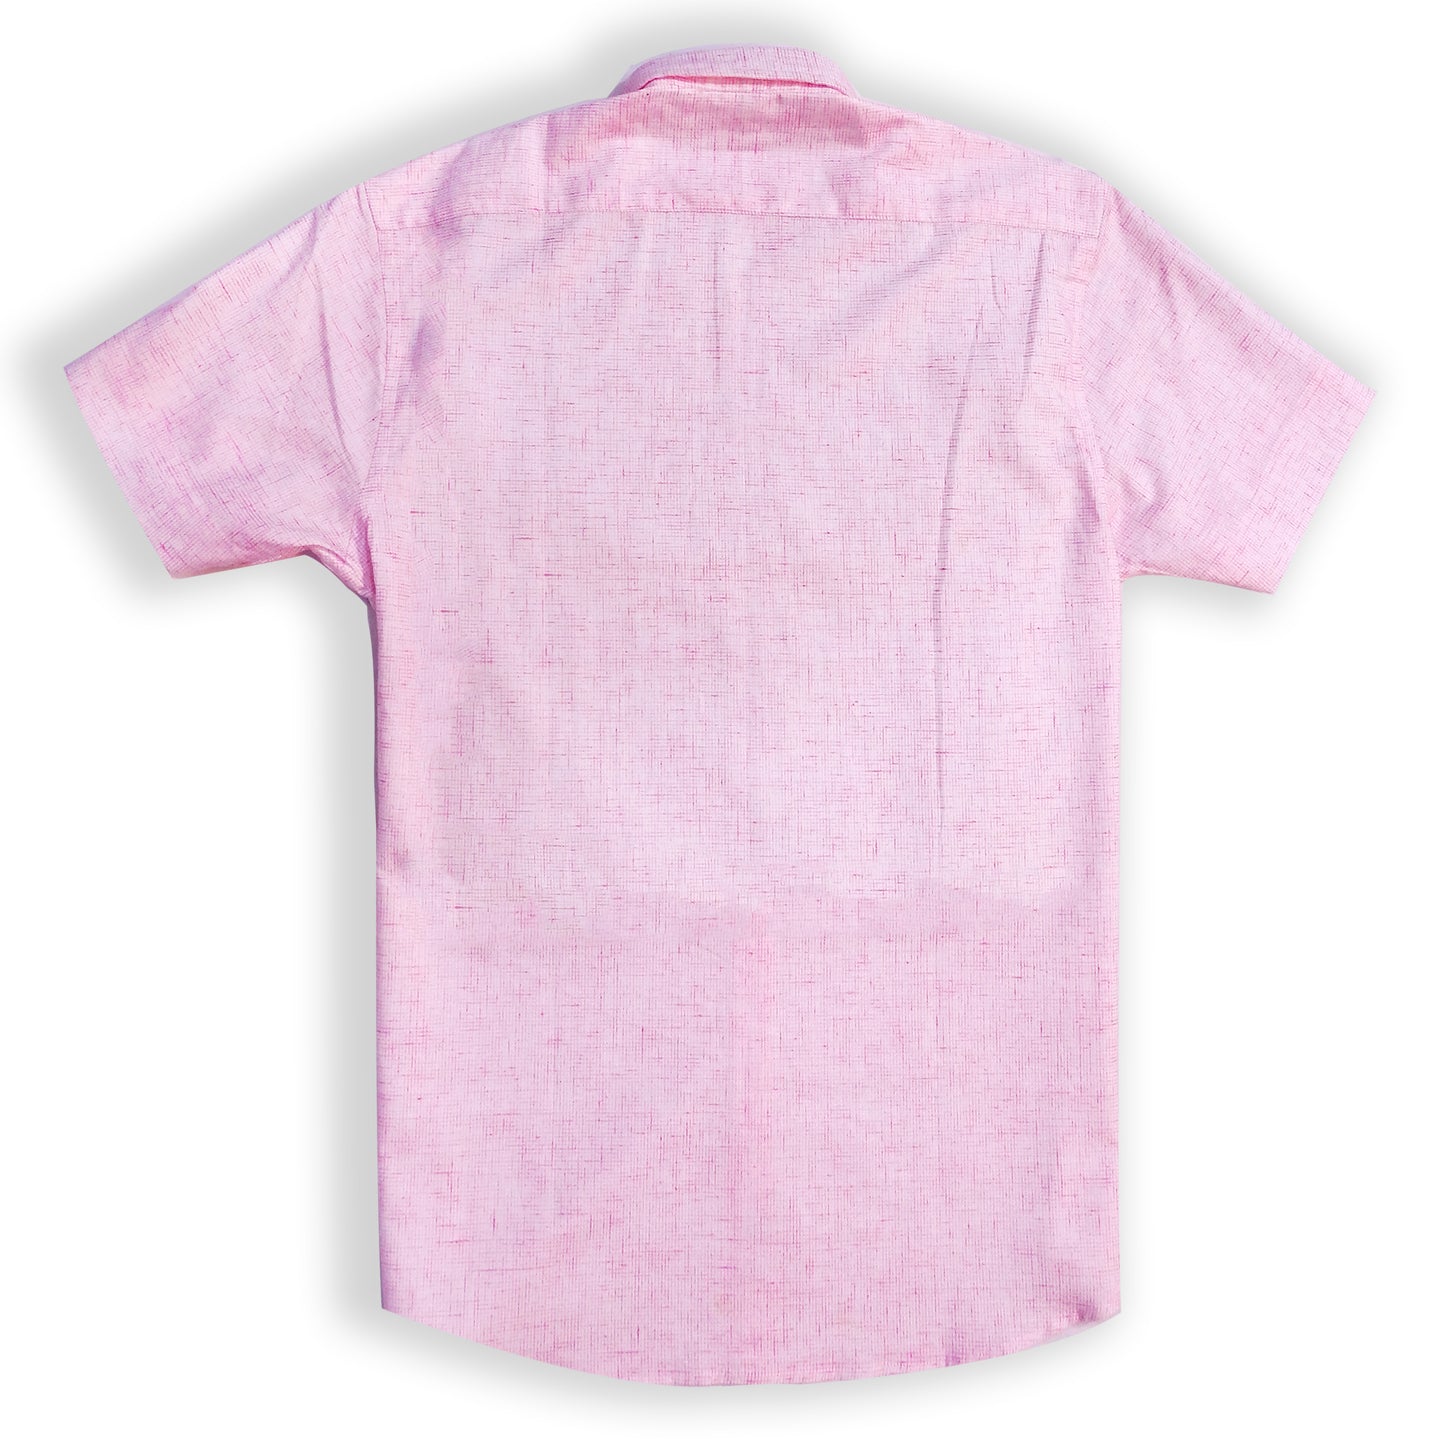 Powder Pink Men's Shirt